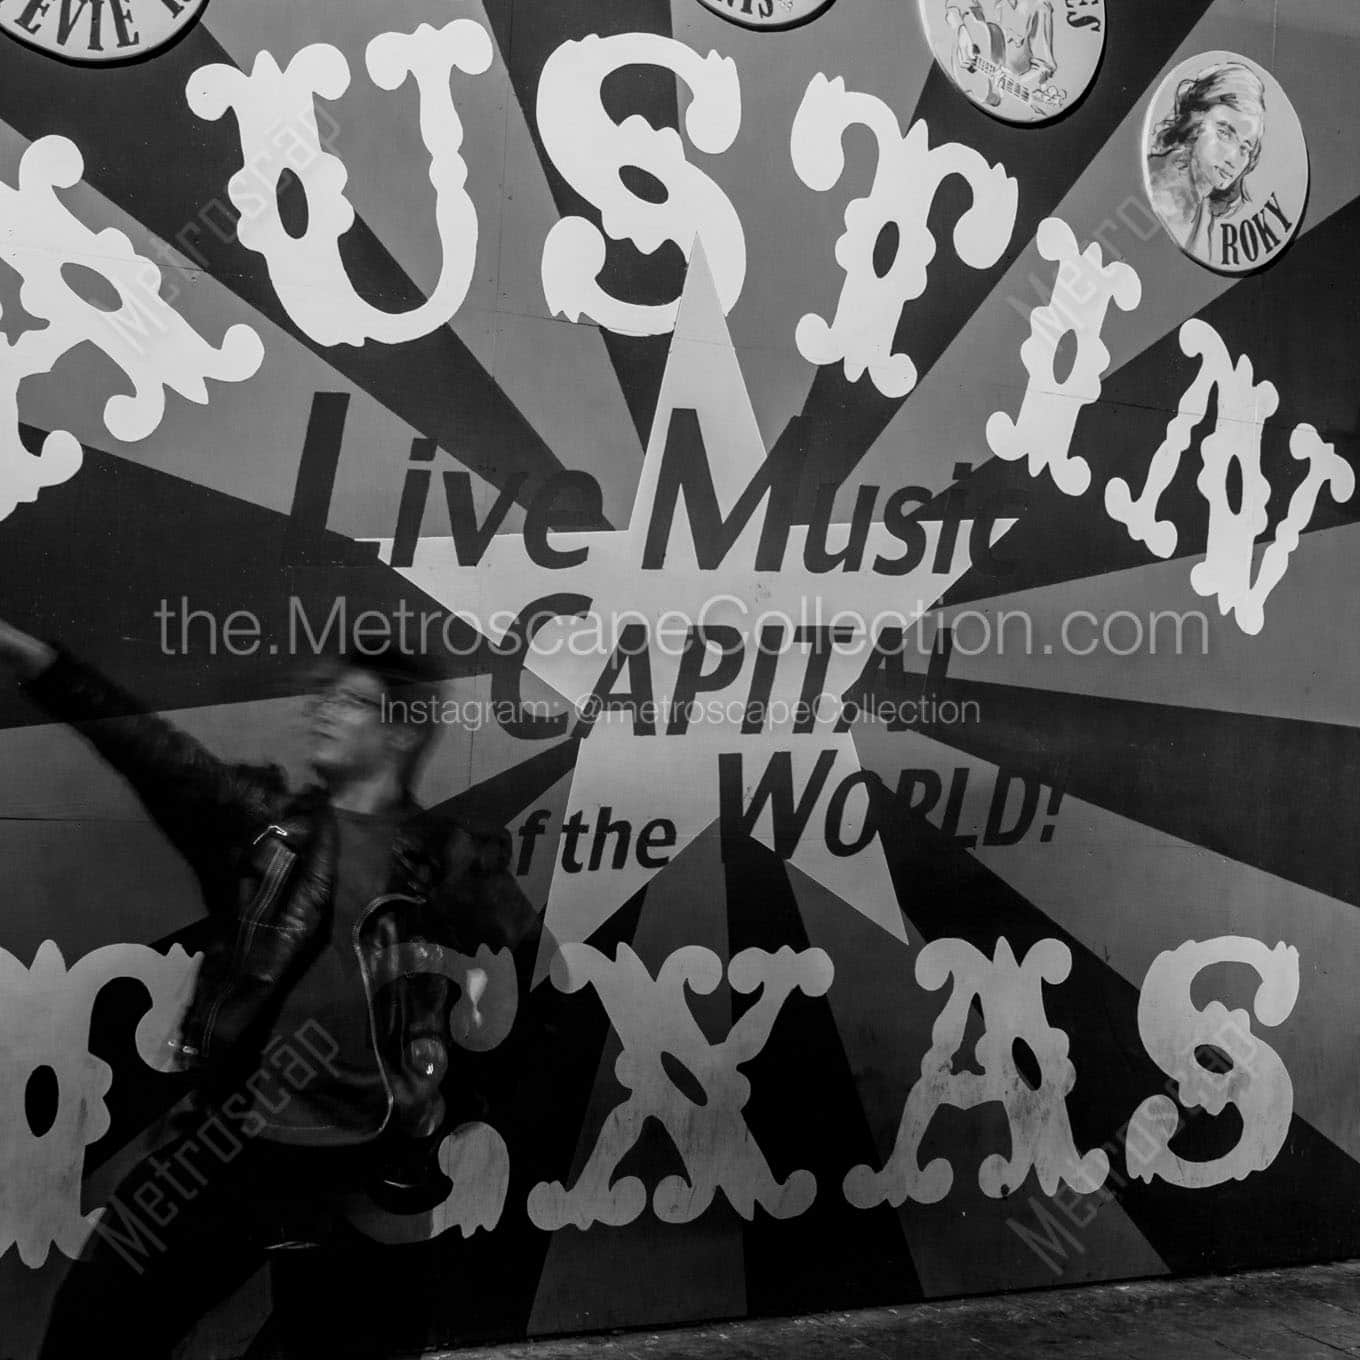 austin live musica capitlal world mural Black & White Office Art